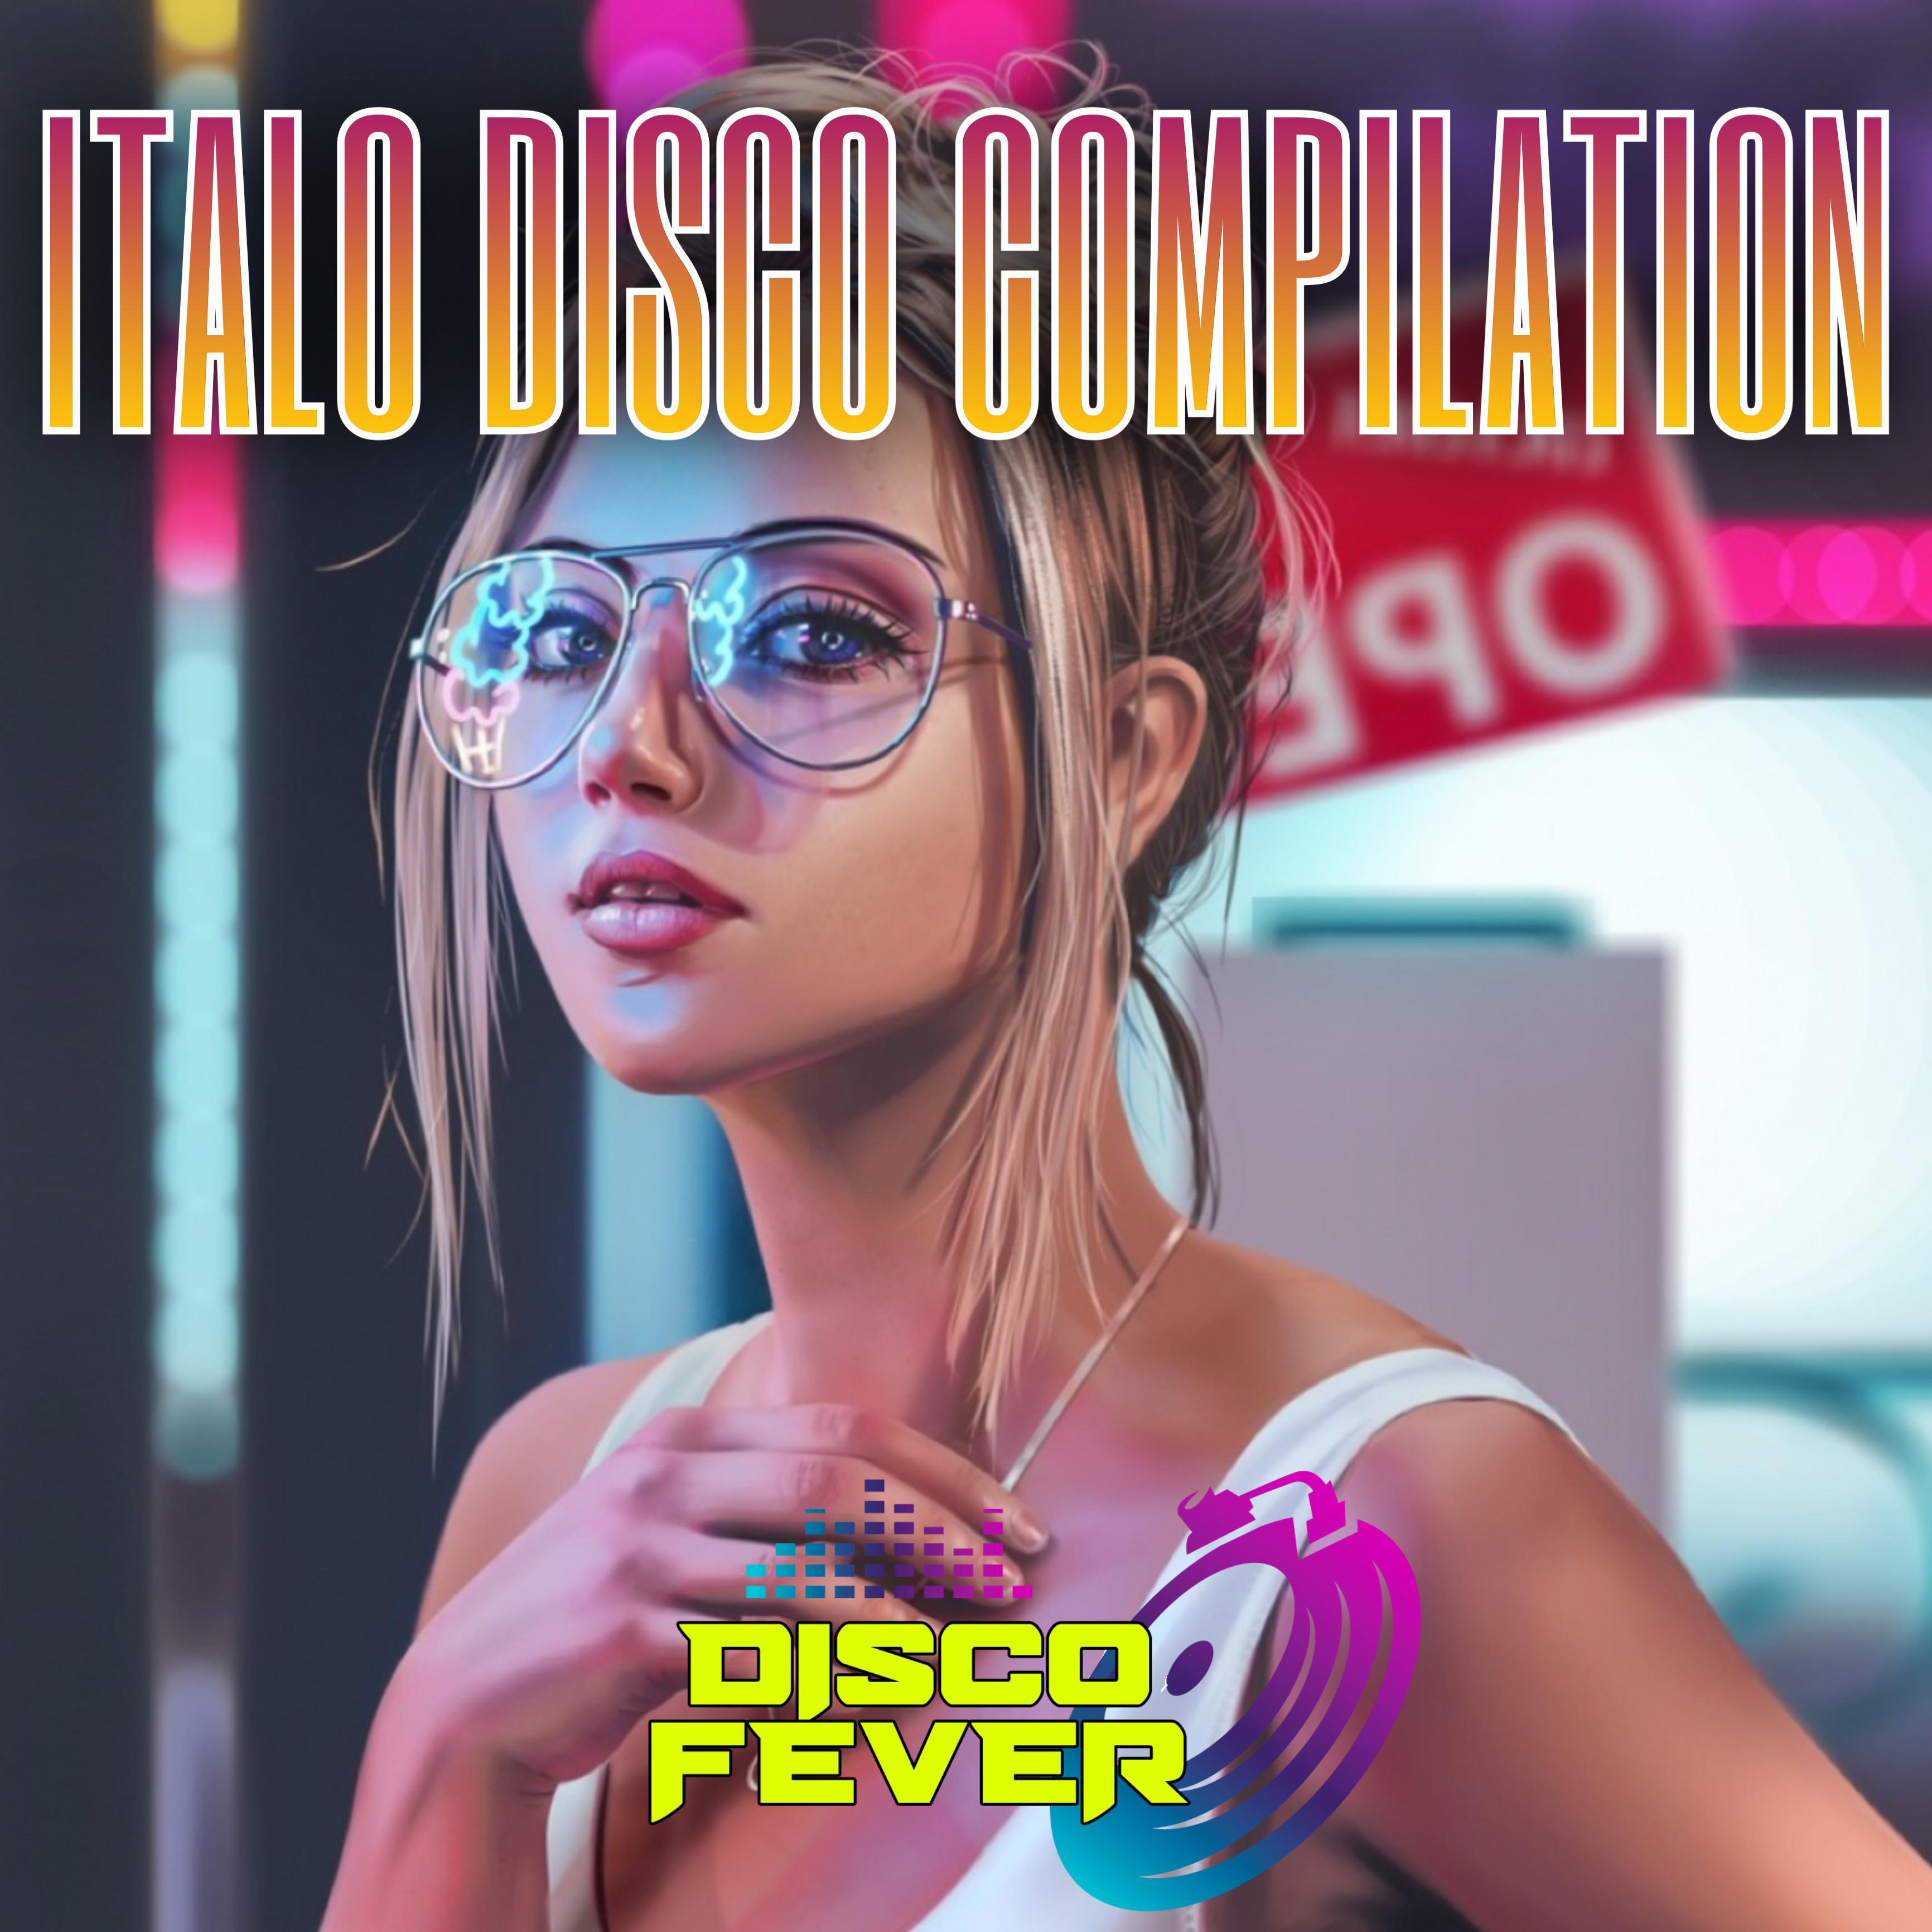 Постер альбома Italo Disco Compilation Disco Fever